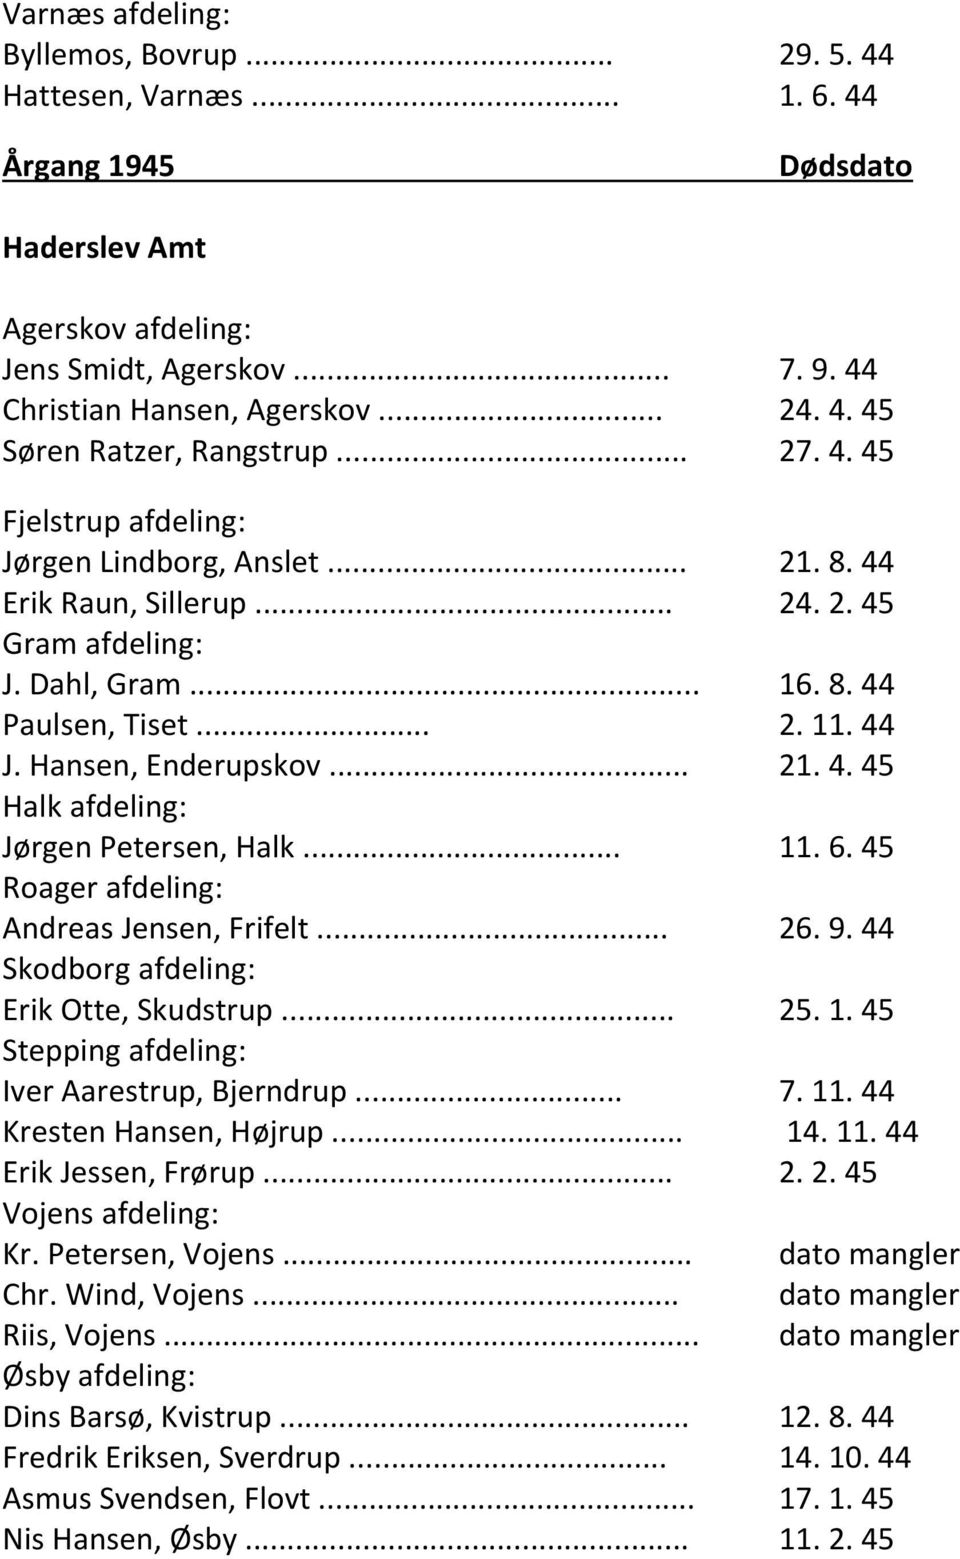 .. 11. 6. 45 Roager afdeling: Andreas Jensen, Frifelt... 26. 9. 44 Skodborg afdeling: Erik Otte, Skudstrup... 25. 1. 45 Stepping afdeling: Iver Aarestrup, Bjerndrup... 7. 11. 44 Kresten Hansen, Højrup.